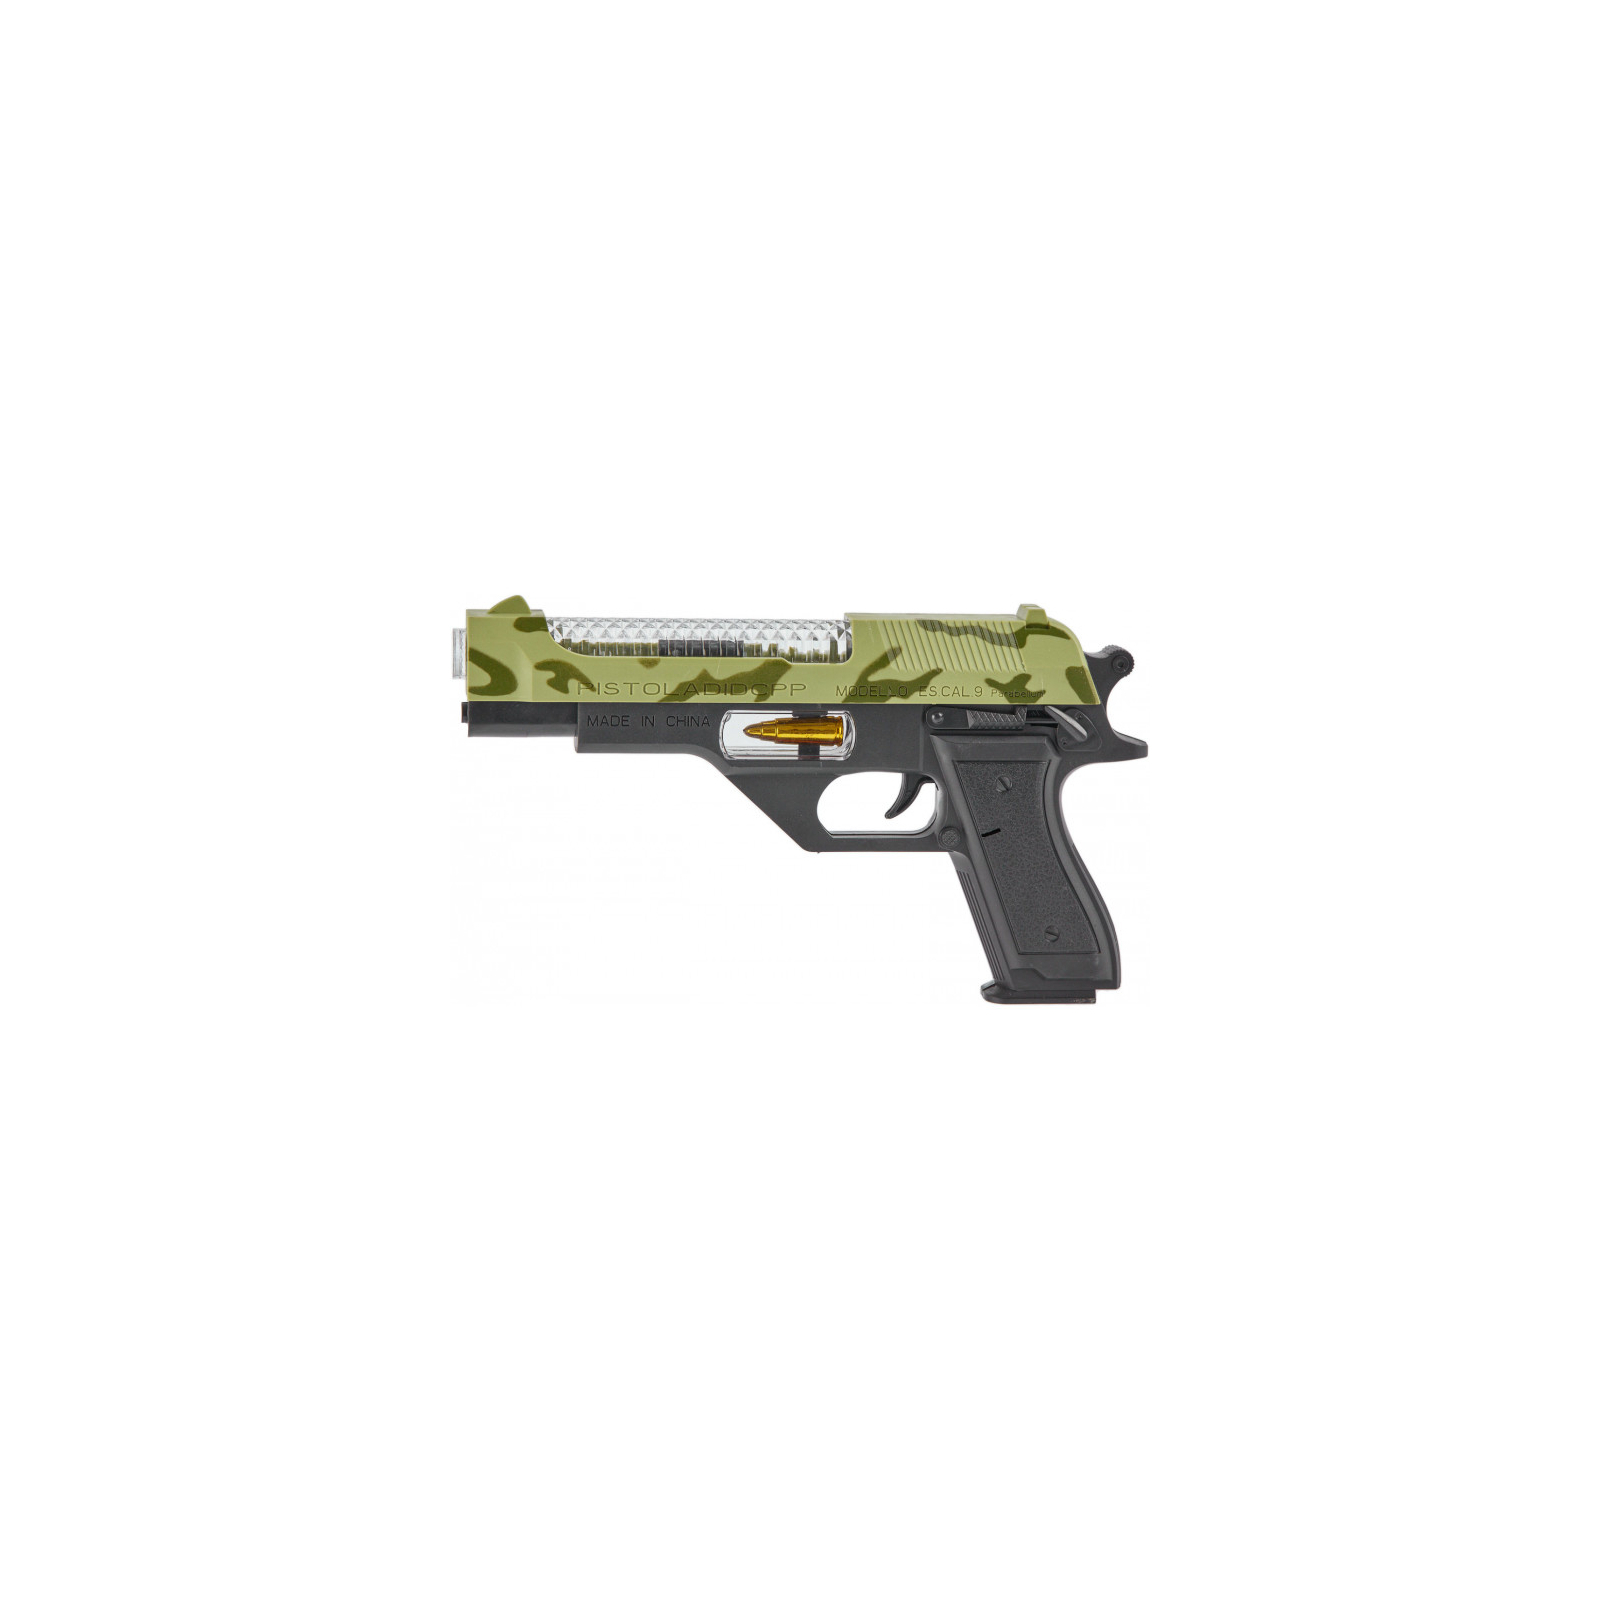 Игрушечное оружие ZIPP Toys Пистолет свето-звуковой Пустынный орел, камуфляж (814) изображение 3